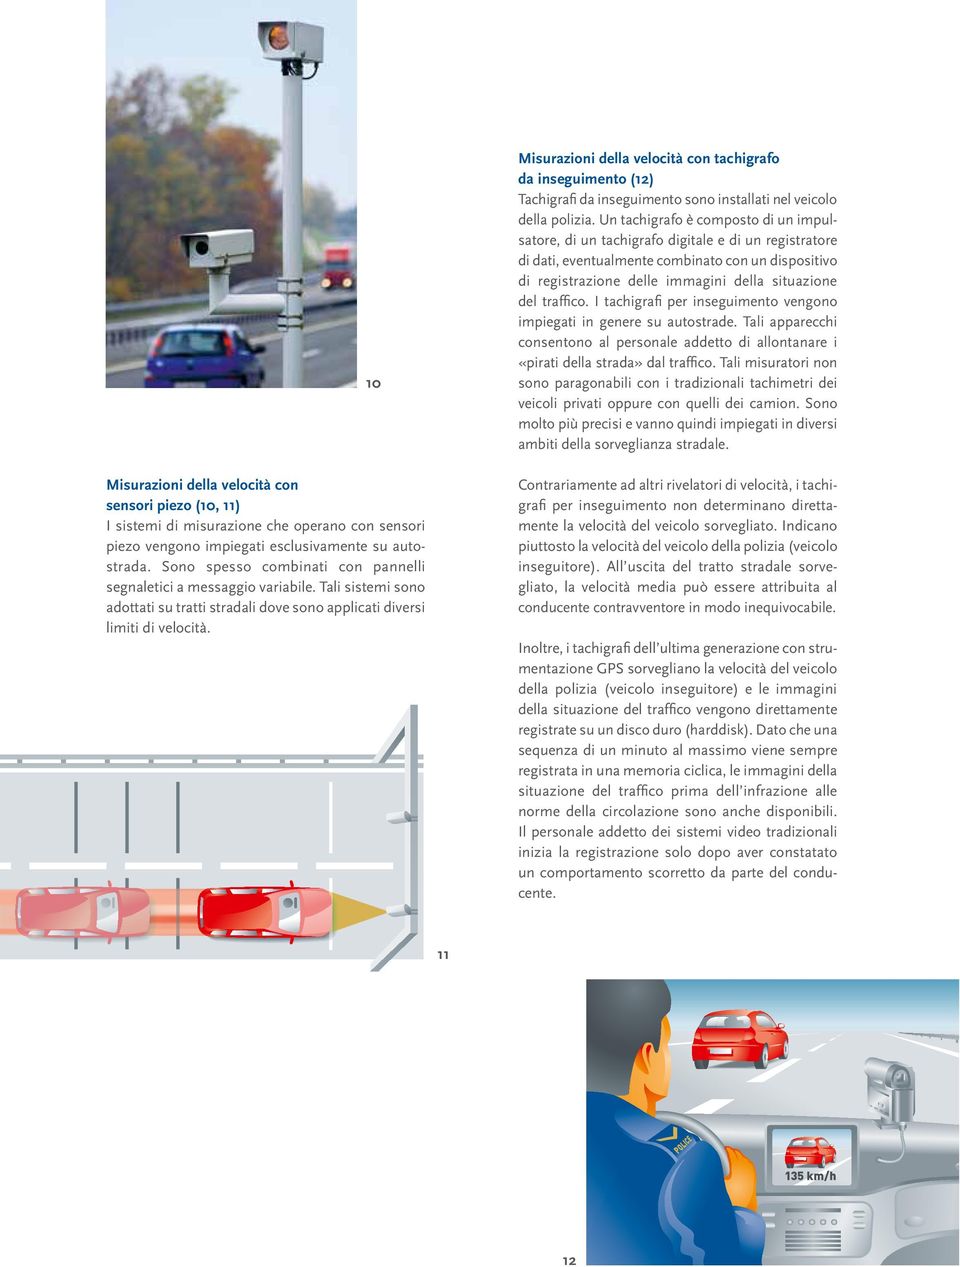 gkeitsmessung mit Drucksensoren (Piezo) 10 Misurazioni della velocità con tachigrafo da inseguimento (12) Tachigrafi da inseguimento sono installati nel veicolo della polizia.